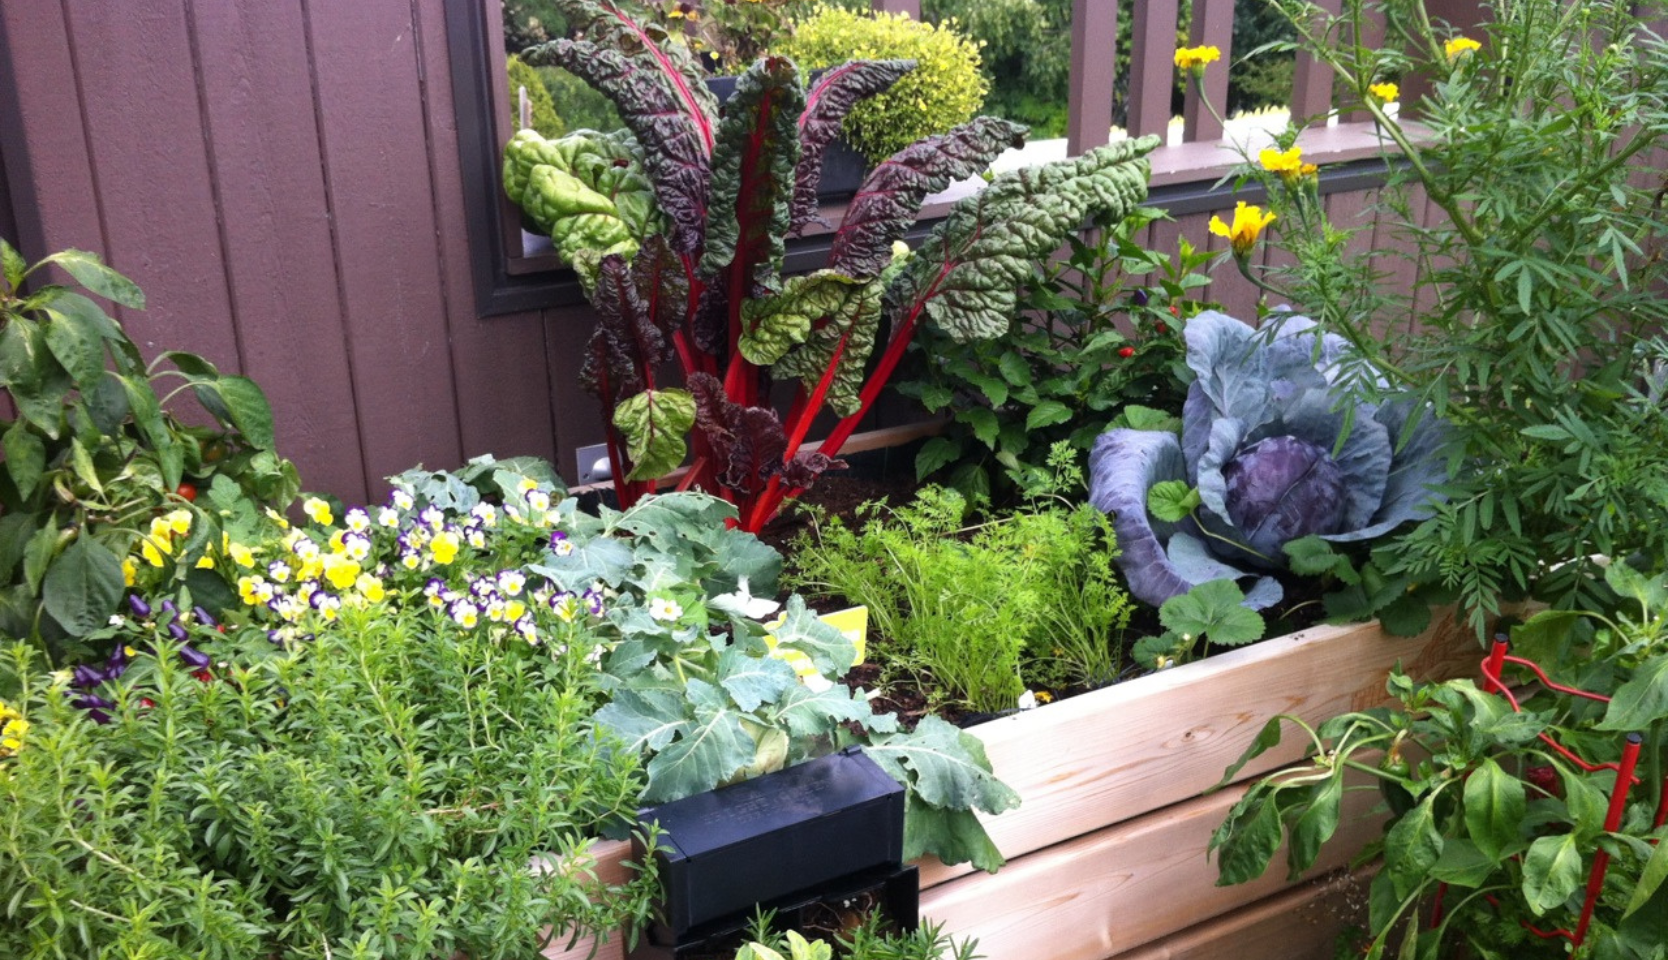 Légumes colorés dans un bac pour agriculture urbaine